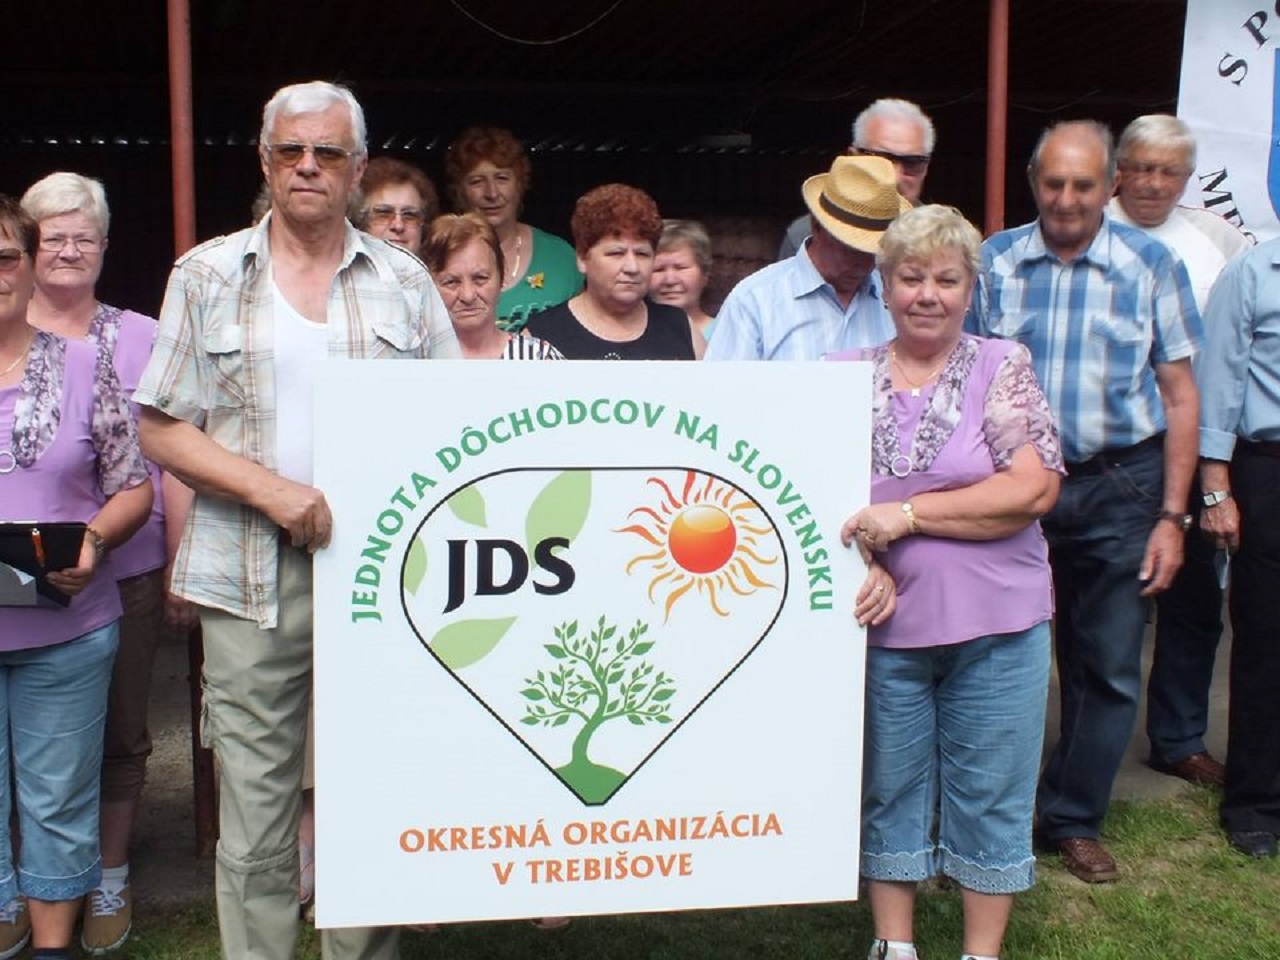 Jednota dôchodcov na Slovensku vyzýva na účasť v referende